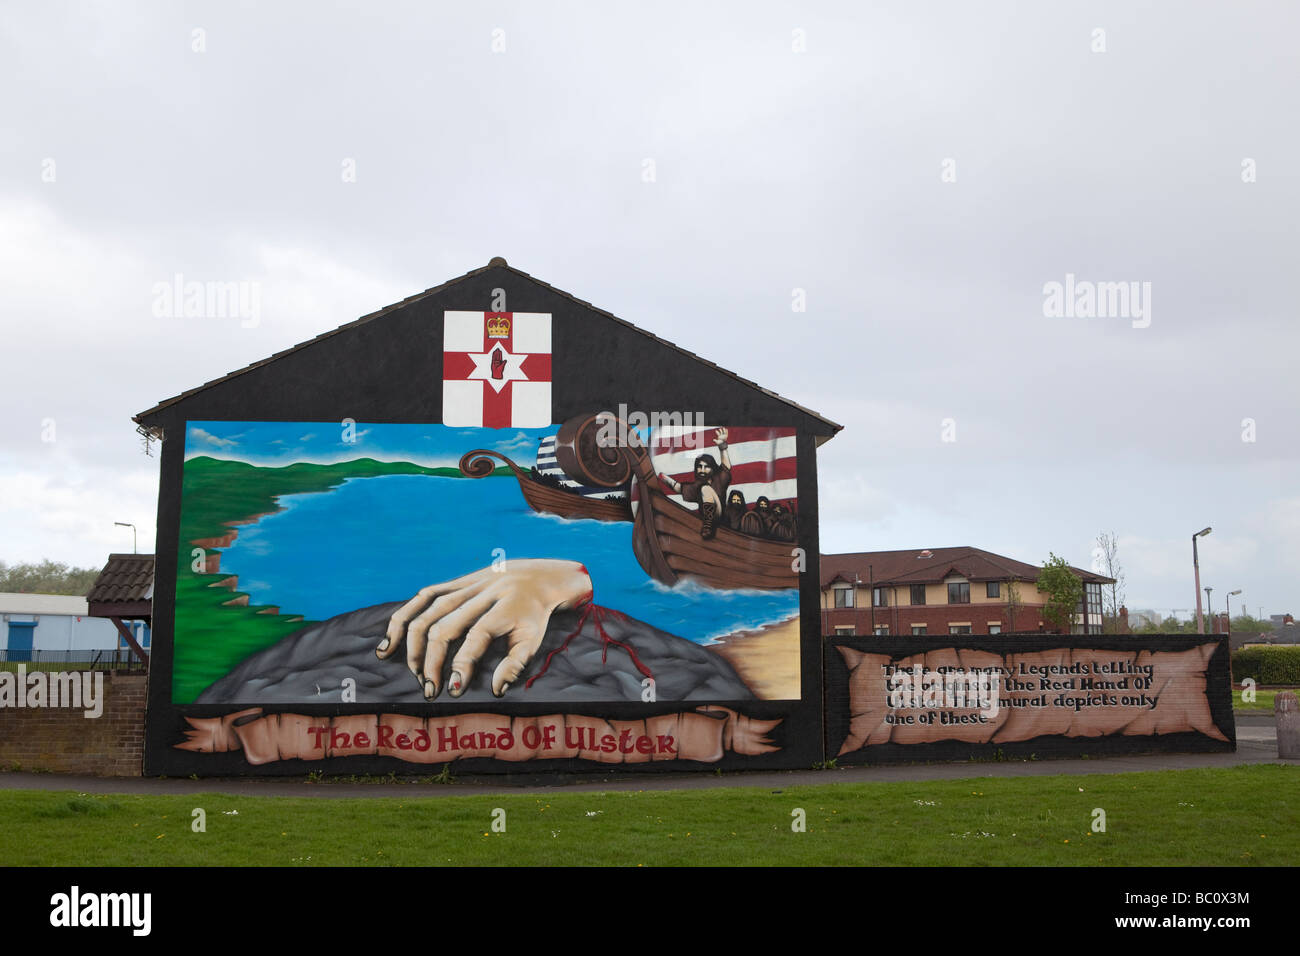 La main rouge d'Ulster dans le quartier ouest, Shankill Belfast, en Irlande du Nord, Royaume-Uni Banque D'Images